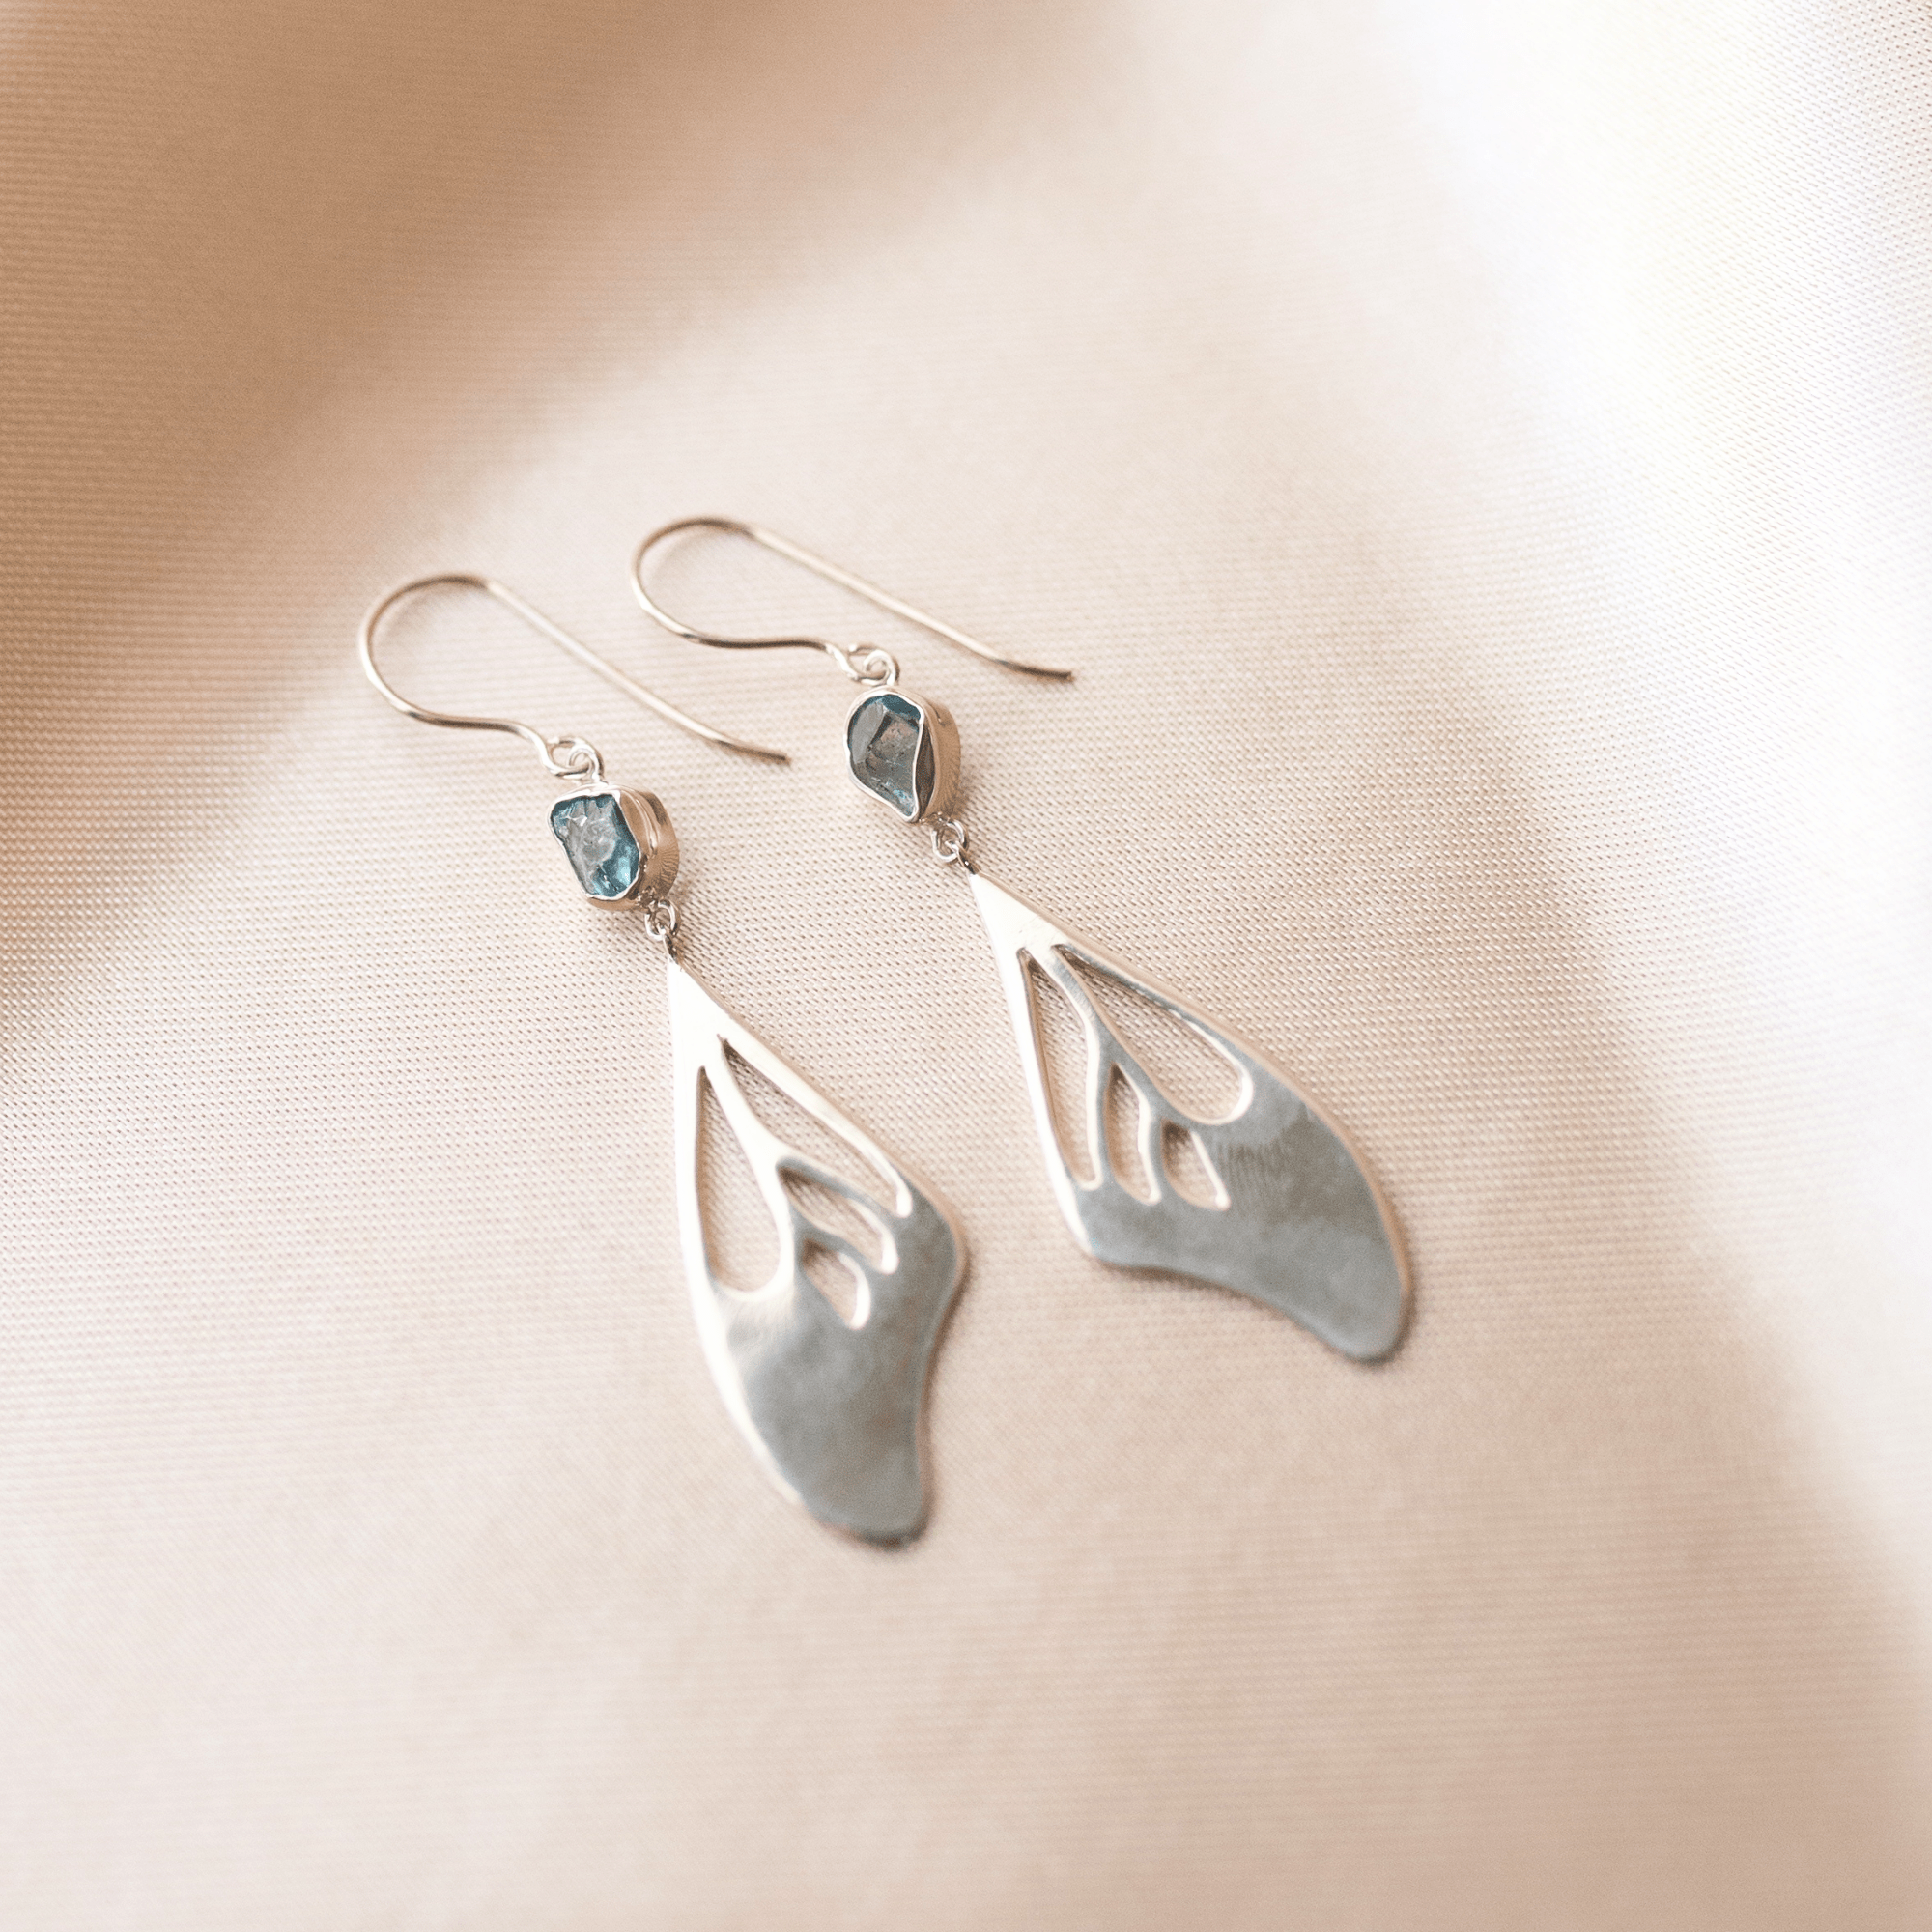 Jewelry Evolution Earrings Elegance Butterfly Wing Earrings with Blue Zircon